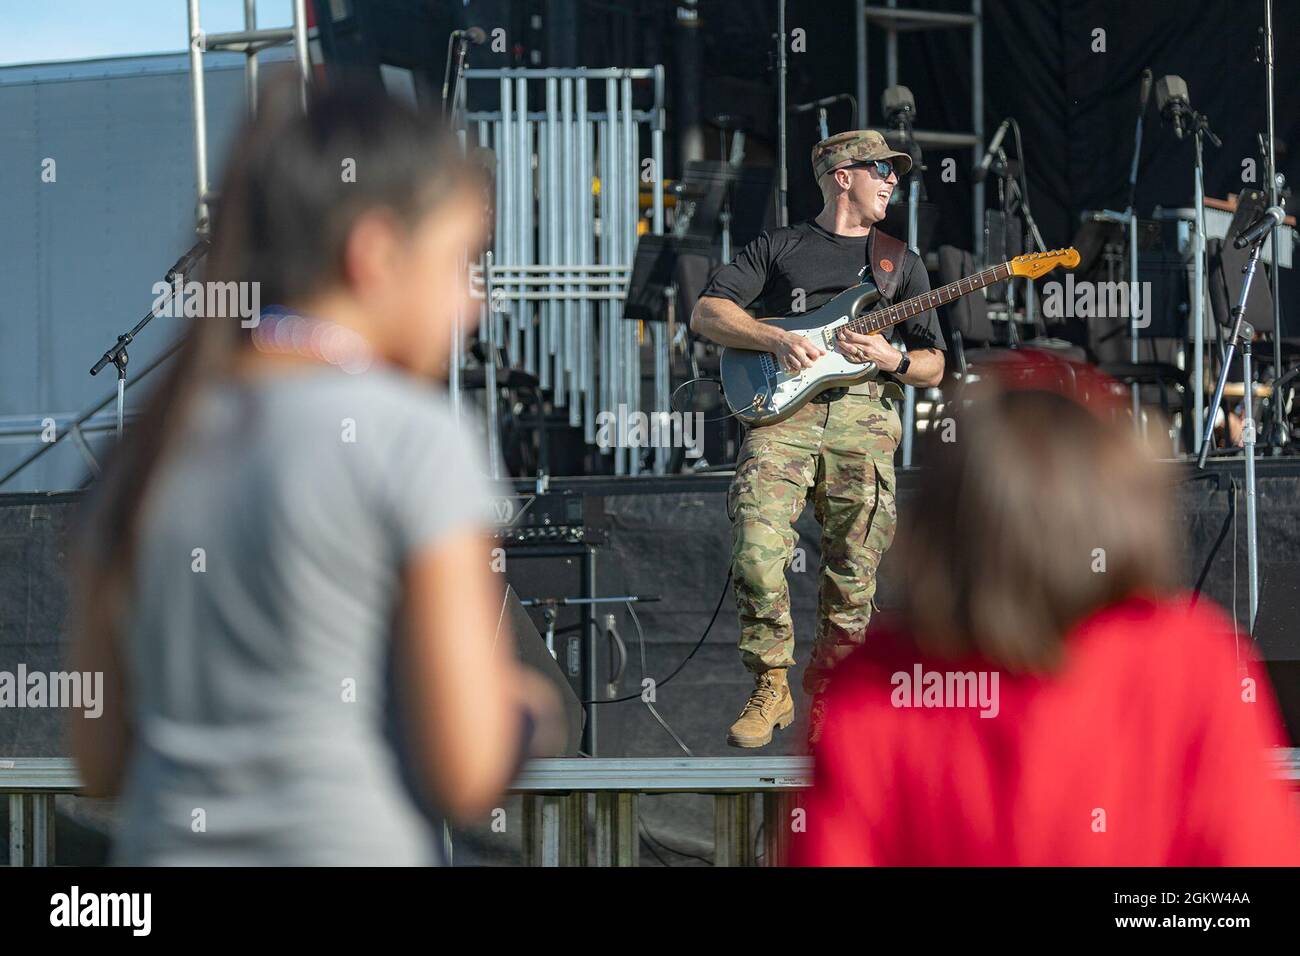 Sgt. Philip Green, ein Soldat und Musiker der 1st Armored Division Band, tritt im Pop Goes the Fort auf, der Feier des Unabhängigkeitstages, am 4. Juli 2021 in Fort Bliss, Texas. Green spielt mit Iron will, der Rockband der 1. AD Band. Stockfoto